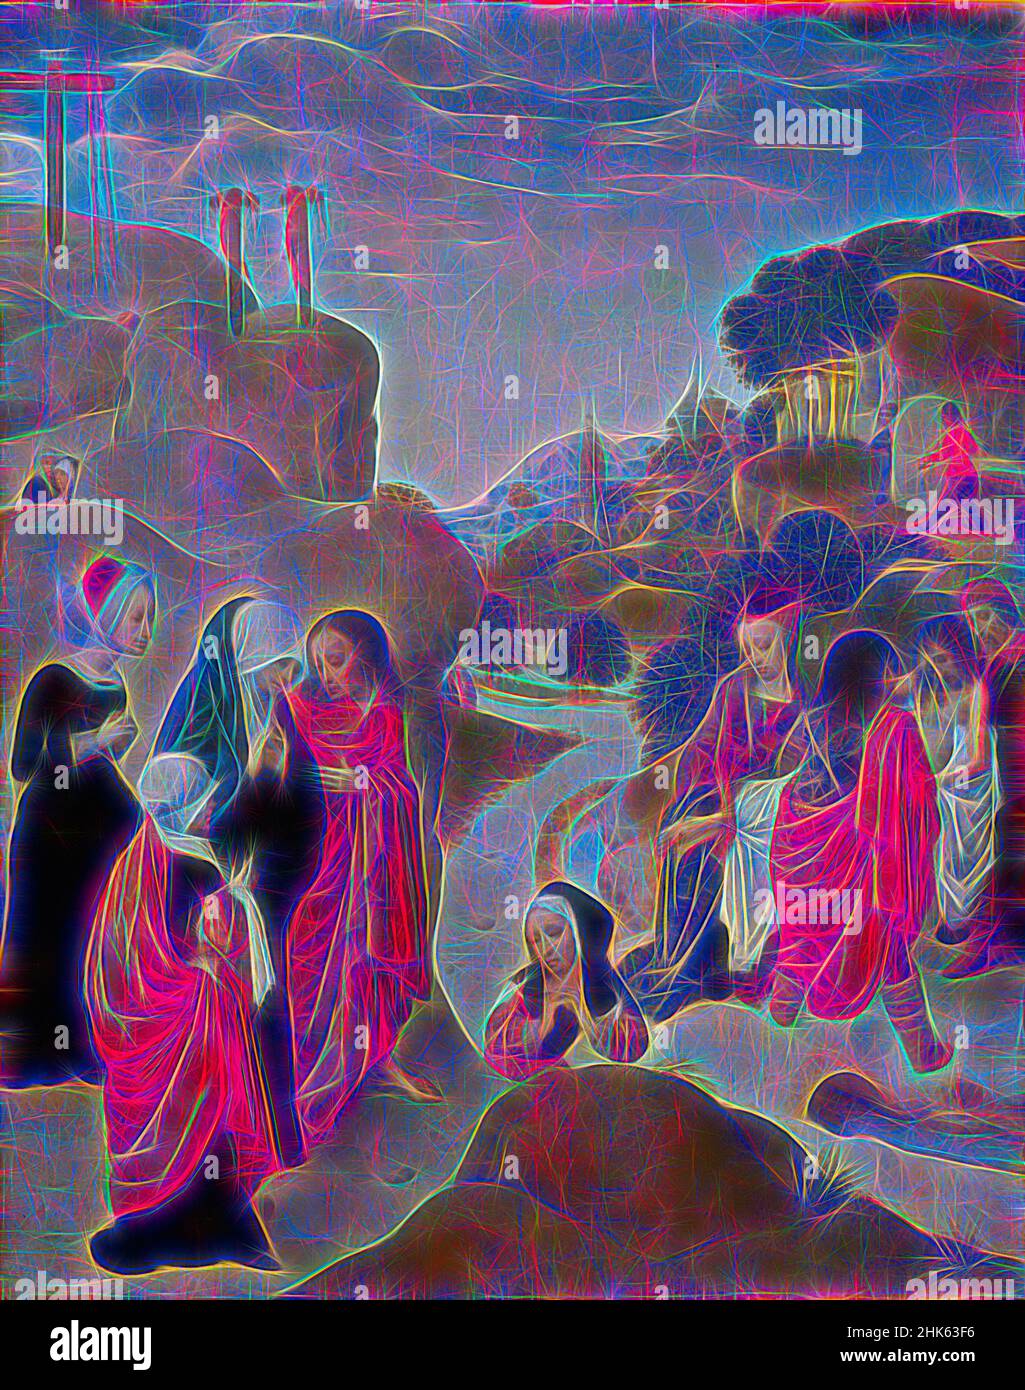 Inspiriert von der Entgrabung Christi, des Meisters der Jungfrau unter den Jungfrauen, Nordniederländisch, aktiv ca. 1483–1498, ca. 1490, Öl auf Tafel, Hergestellt in den Niederlanden, Europa, Gemälde, 23 1/16 x 18 5/16 Zoll (58,6 x 46,5 cm, neu erfunden von Artotop. Klassische Kunst neu erfunden mit einem modernen Twist. Design von warmen fröhlichen Leuchten der Helligkeit und Lichtstrahl Strahlkraft. Fotografie inspiriert von Surrealismus und Futurismus, umarmt dynamische Energie der modernen Technologie, Bewegung, Geschwindigkeit und Kultur zu revolutionieren Stockfoto